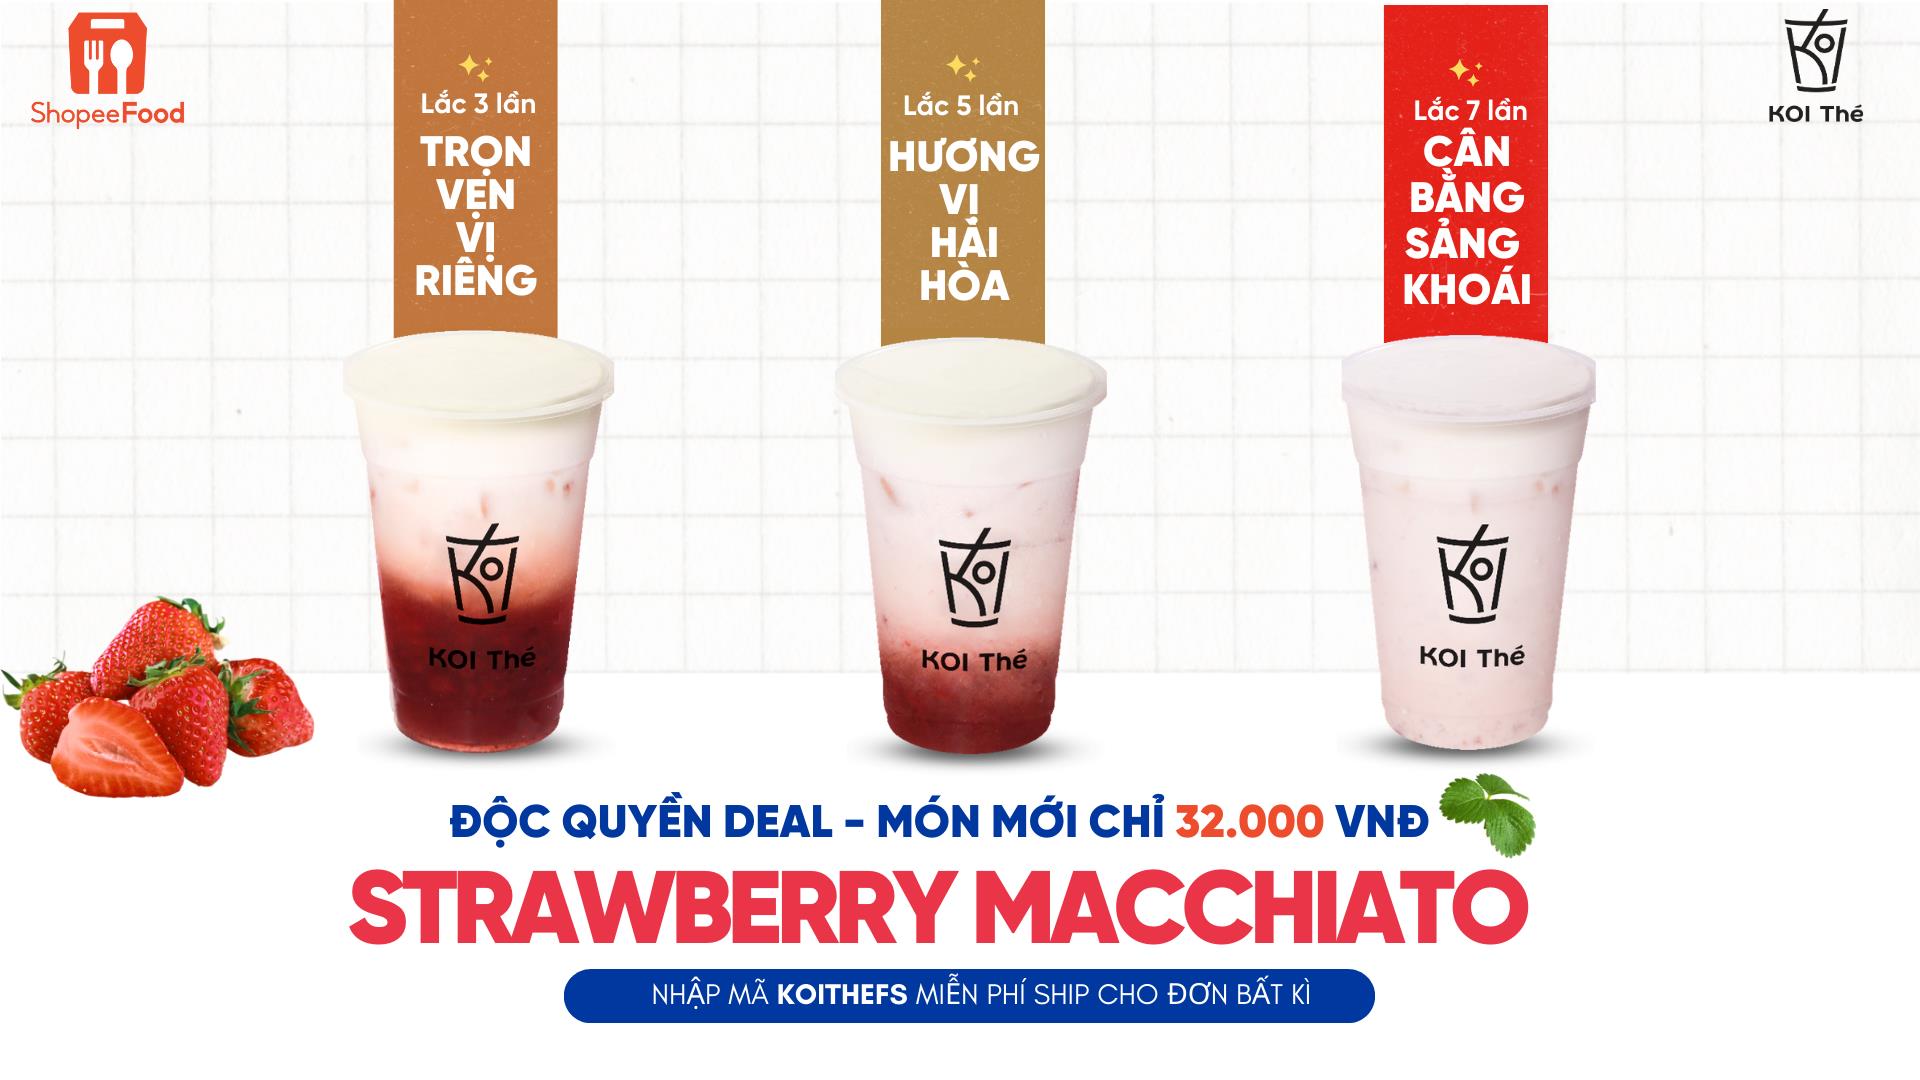 Độc quyền Strawberry Macchiato chỉ 32.000 đồng từ nhà KOI Thé, ShopeeFood có hết - Ảnh 1.